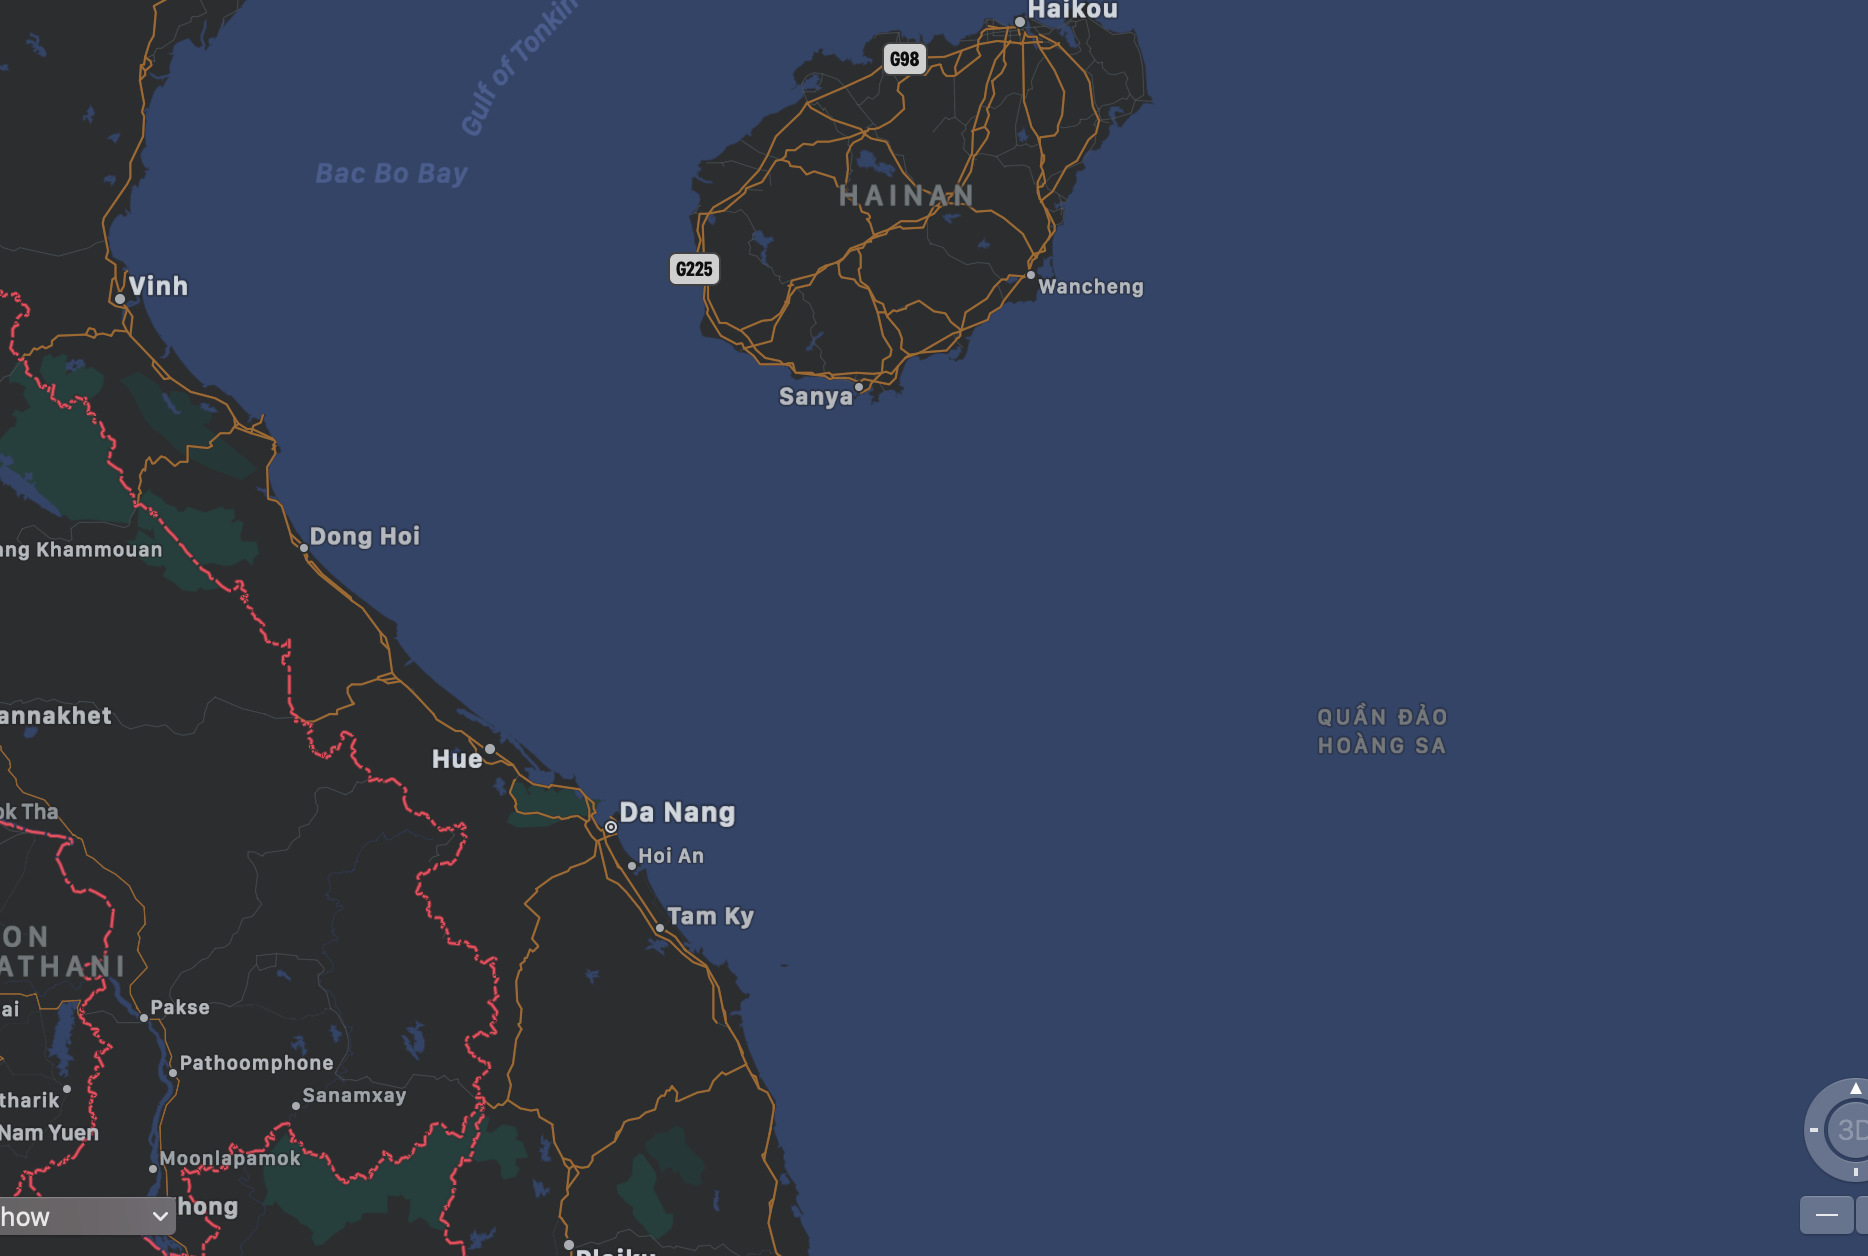 Quần đảo Hoàng Sa và Trường Sa đã được Apple Maps bổ sung trên dữ liệu bản đồ. (Ảnh chụp màn hình)